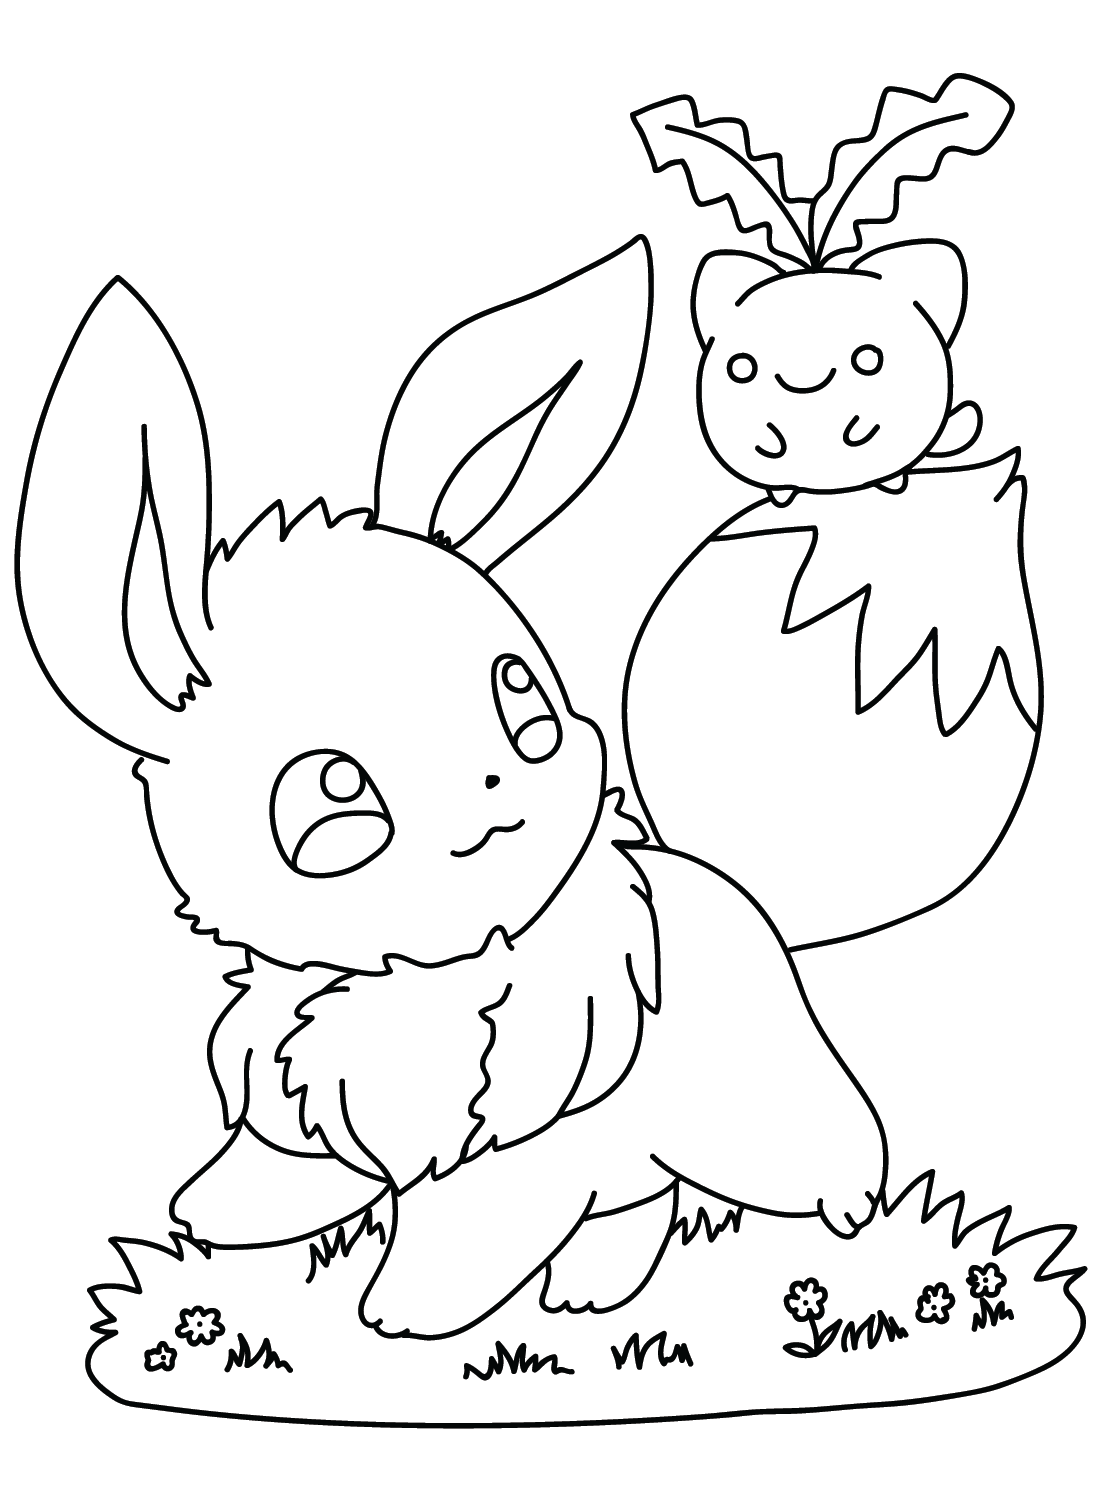 Como Desenhar o Eevee (Pokémom)  Pokemon coloring pages, Pokemon coloring,  Pokemon drawings